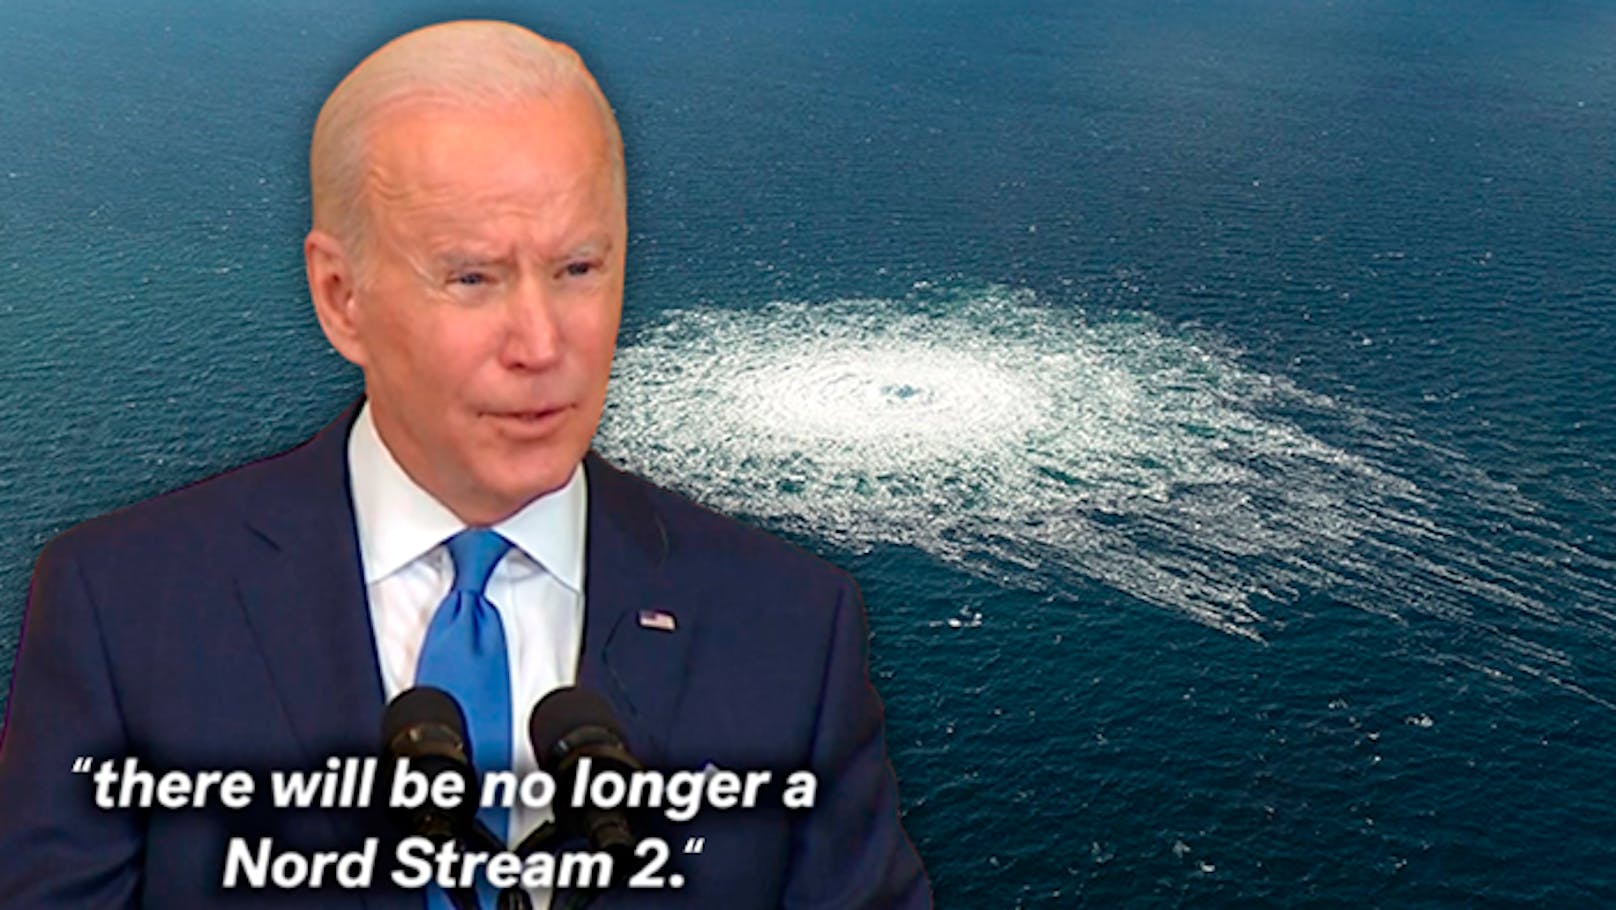 US-Präsident <strong>Joe Biden</strong>, bereits am 7. Februar 2022 nahm er zu Nord Stream und einem möglichen Ende Stellung. Jetzt gehen die Wogen hoch.